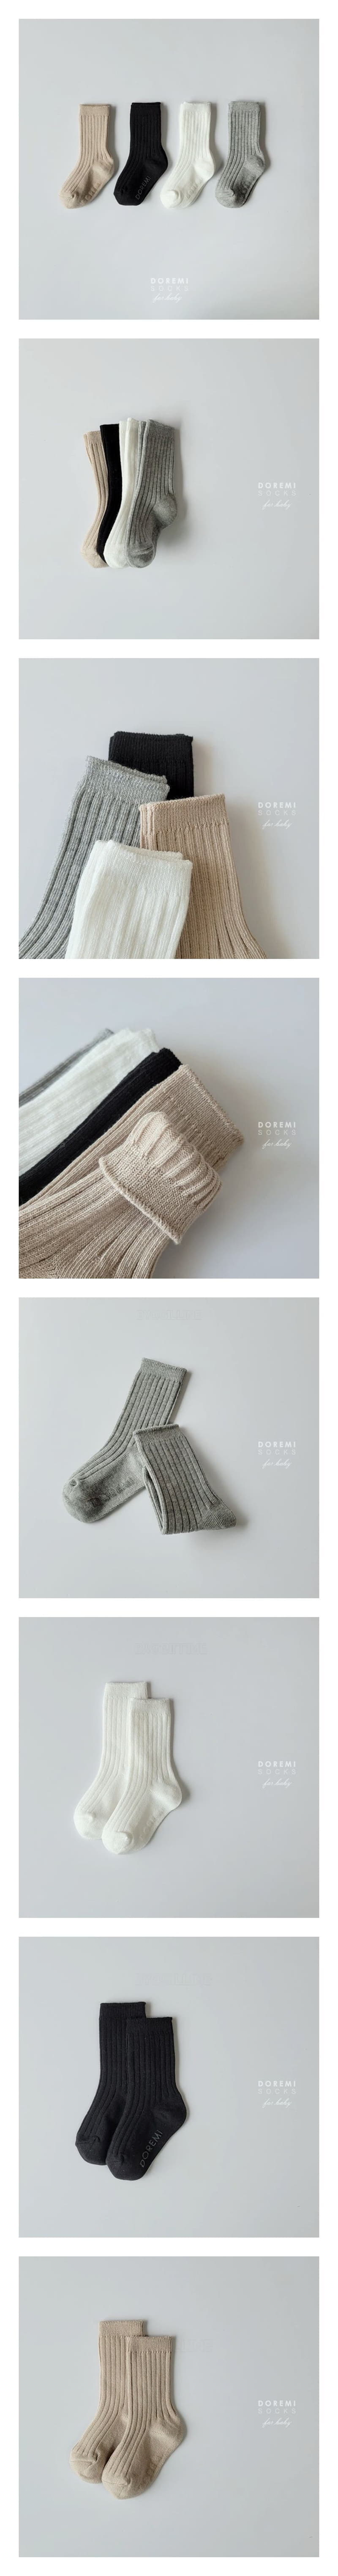 Doremi Socks - Korean Children Fashion - #minifashionista - Basic Socks